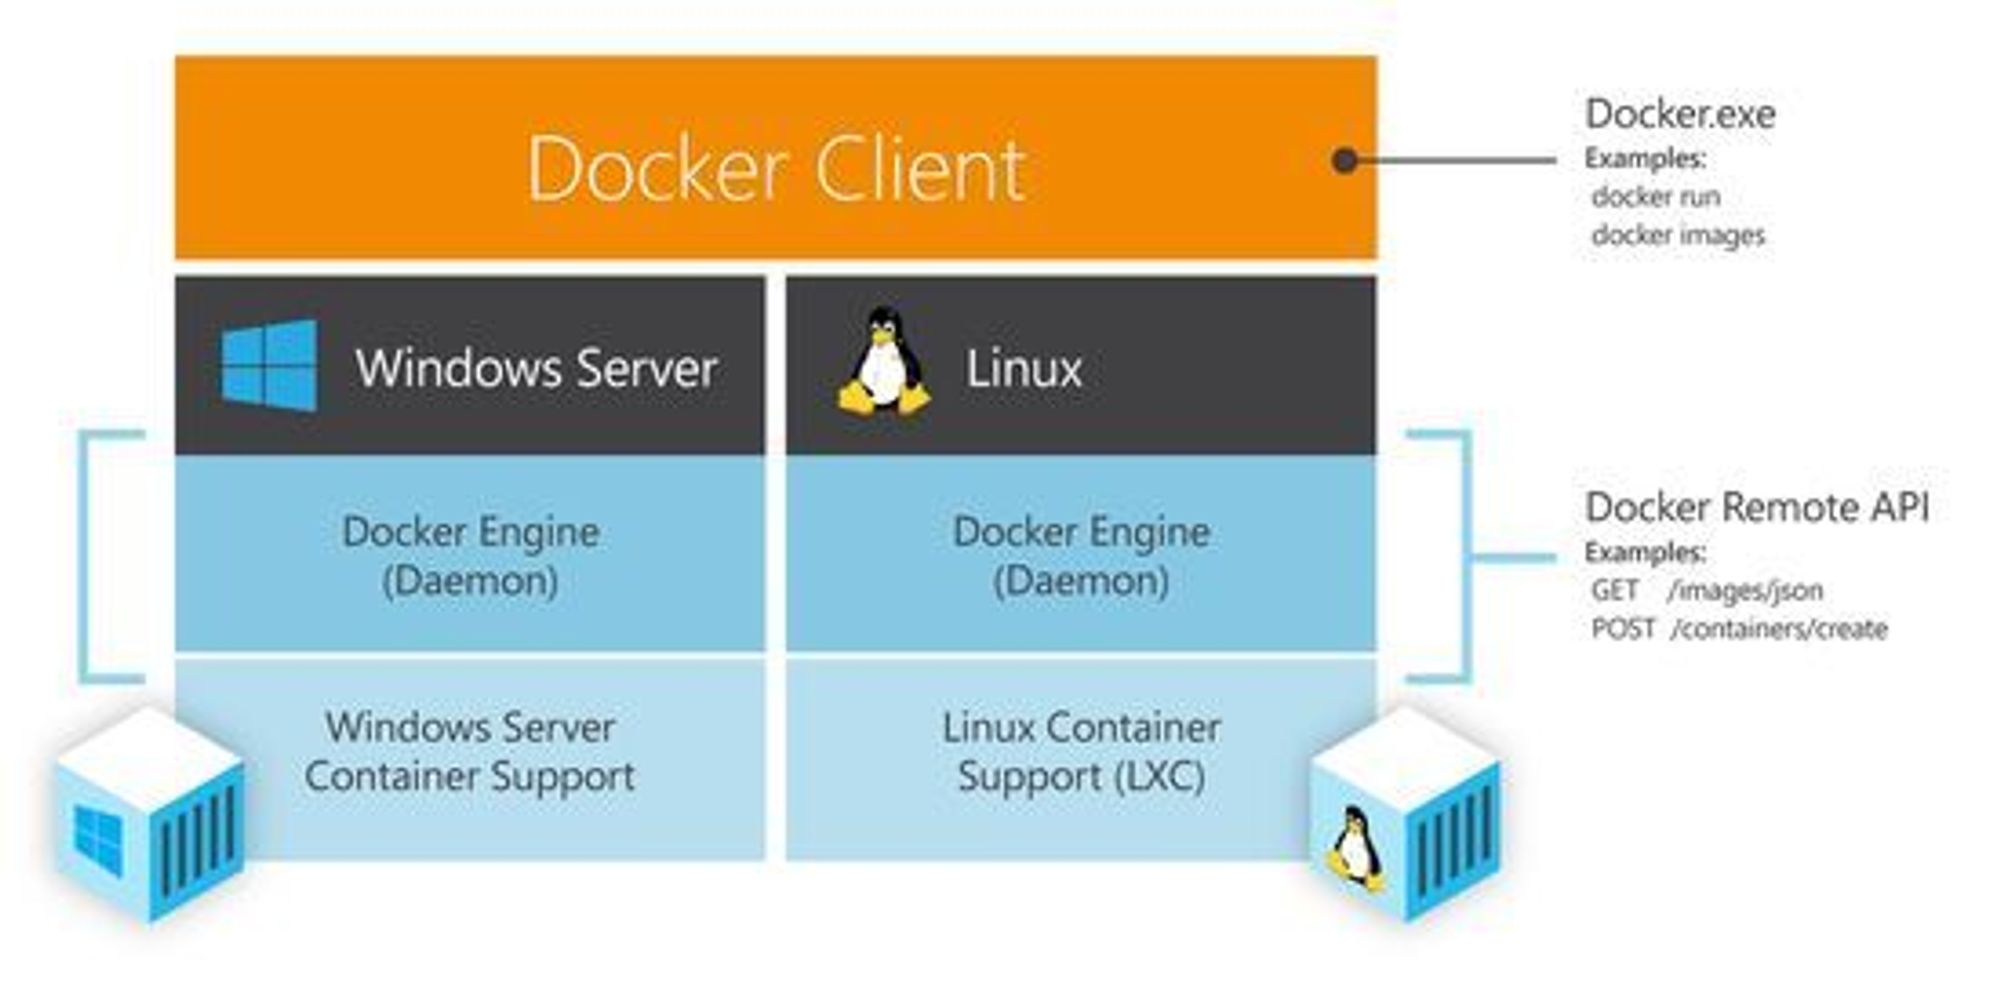 Docker-klienten vil være felles for både Linux- og Windows-baserte Docker-oppsett.